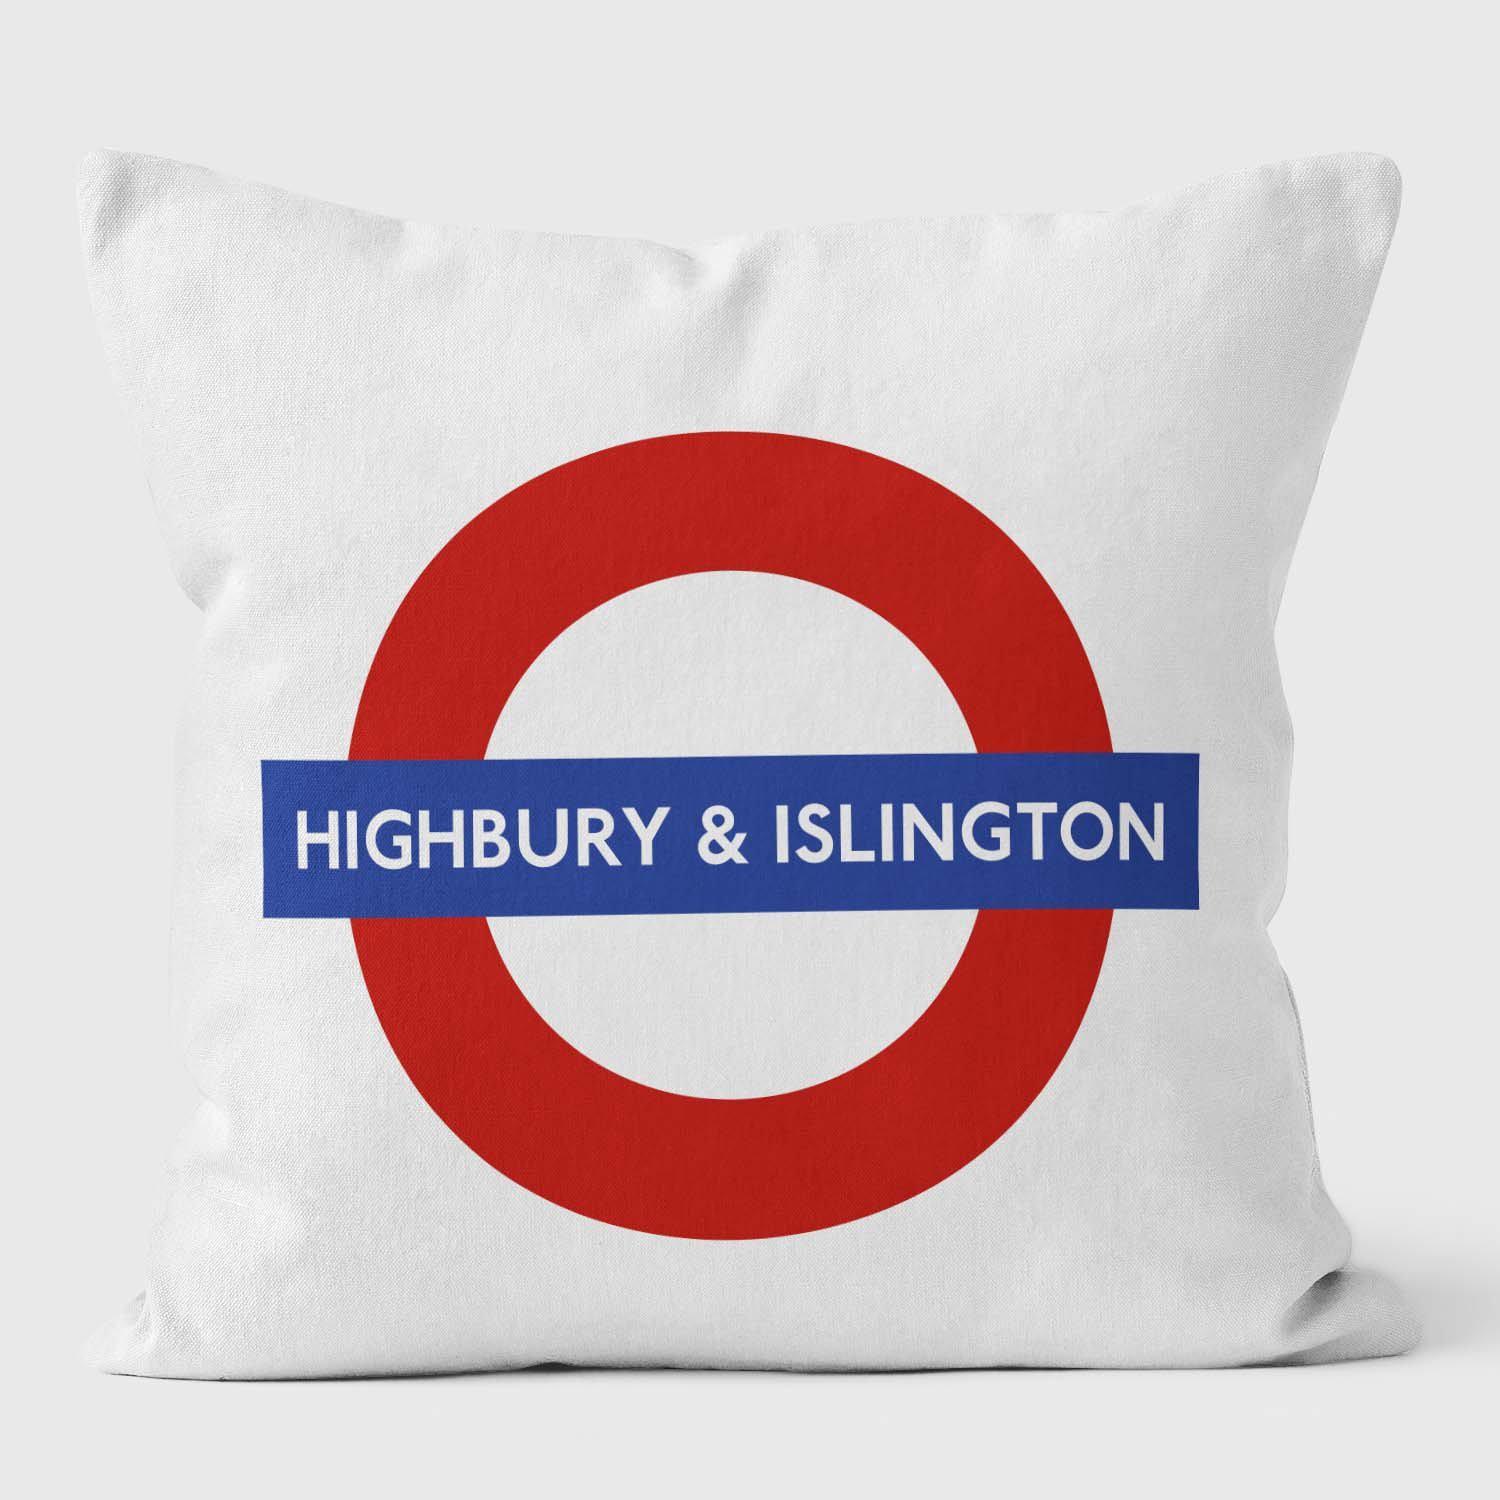 Highbury Islington London Underground Tube Station Roundel Cushion - Handmade Cushions UK - WeLoveCushions